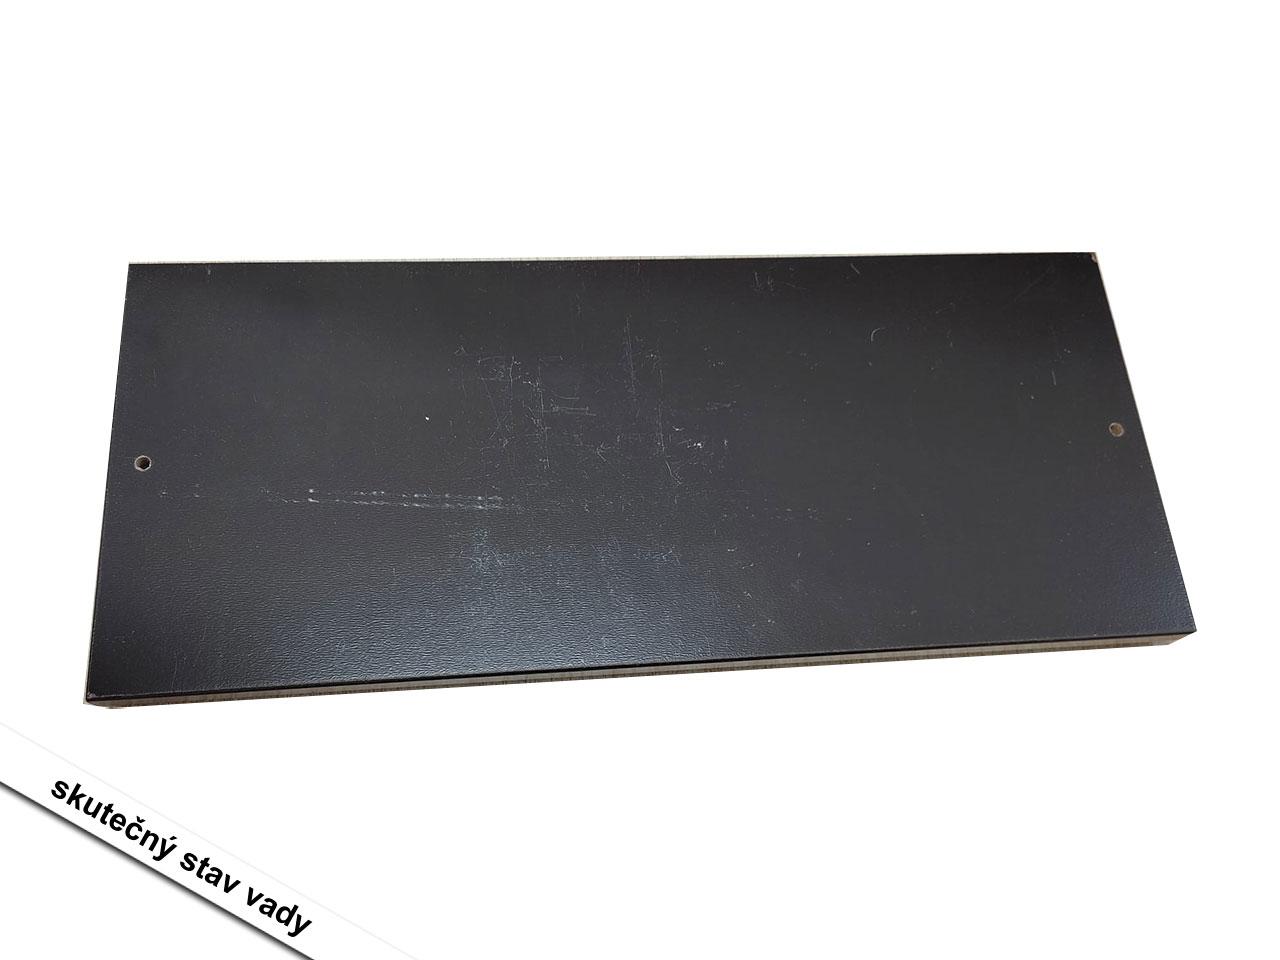 Schody pro domácí mazlíčky D06-078, 4stupňové, s protiskluzovou podložkou, MDF, tmavě hnědá, 40 x 59 x 54,2 cm